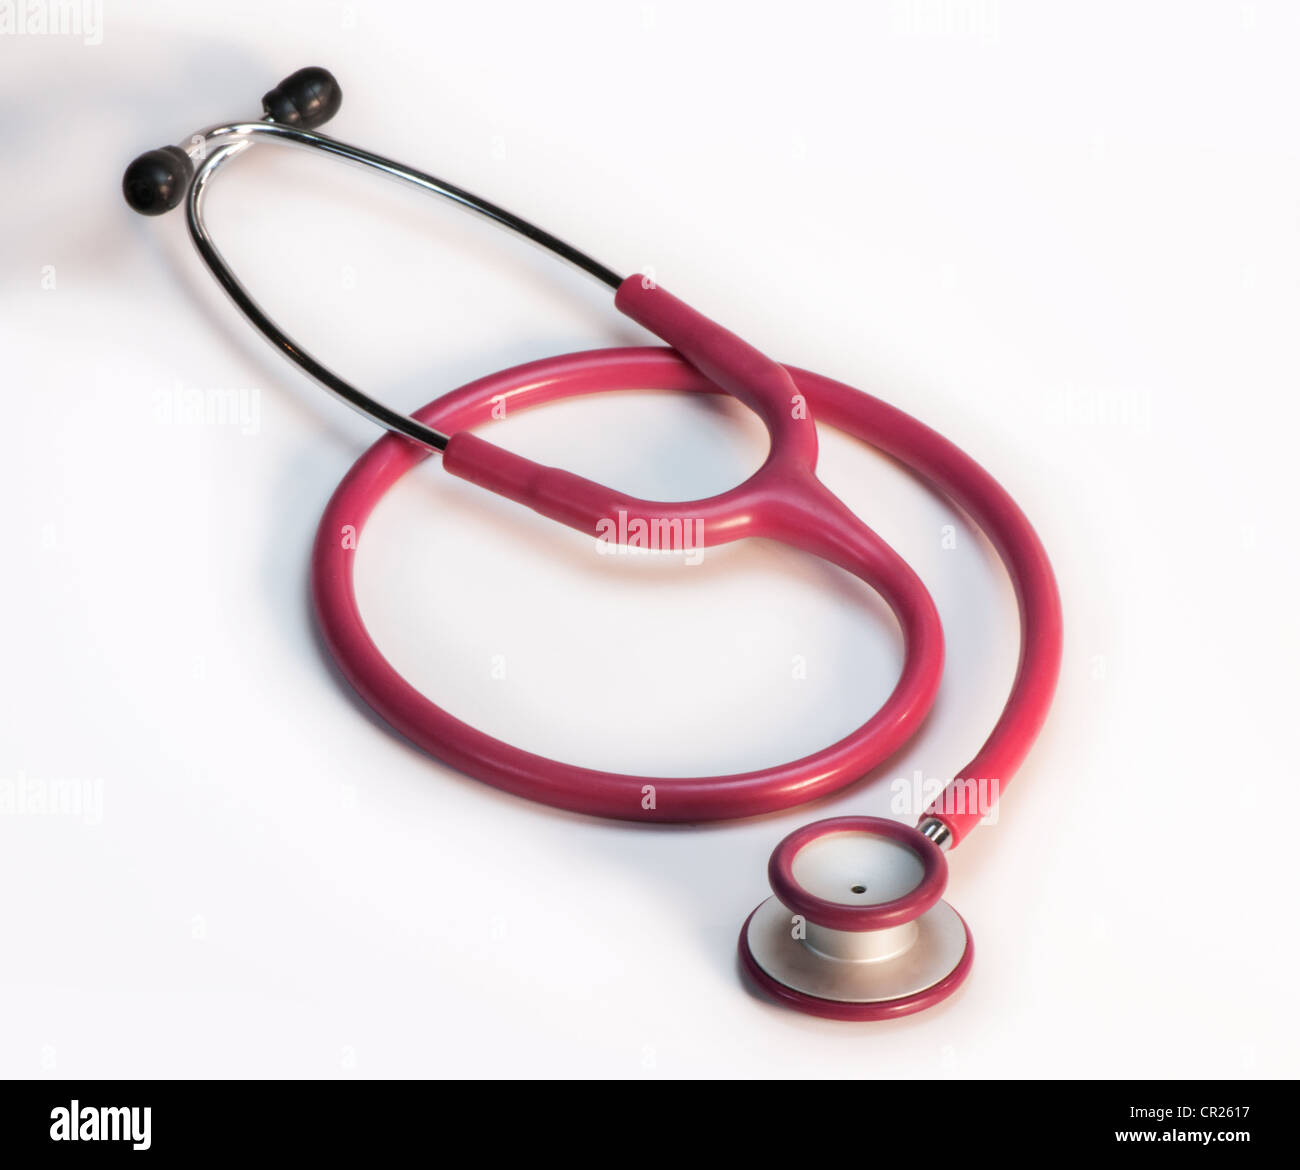 medical stethoscope Stock Photo